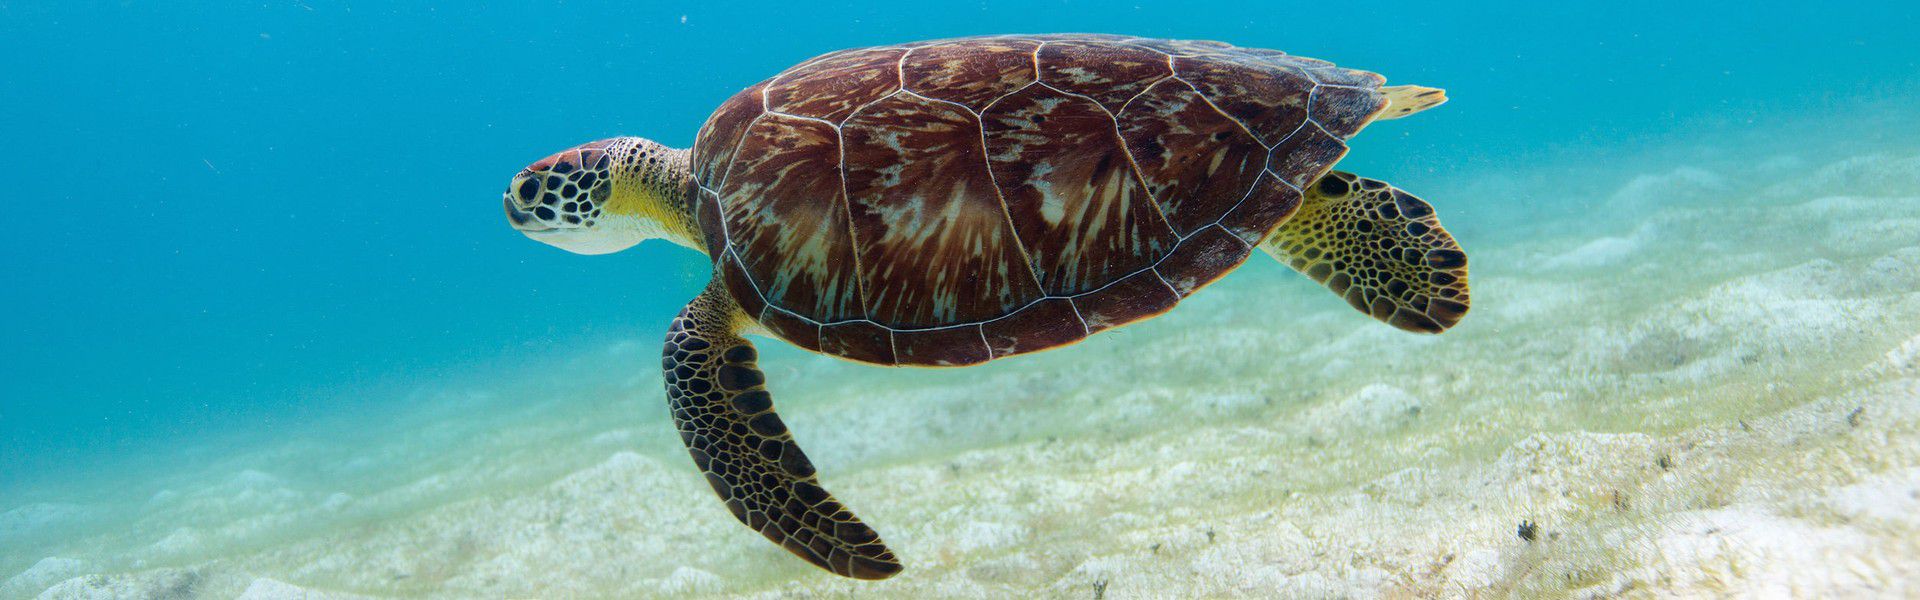 L'une des plus belles expériences dans le monde aquatique est très certainement la nage avec les tortues. Les tortues marines sont calmes et inoffensives. Le temps d'une baignade/plongée, elles vous accueillent dans leur milieu naturel. Cette espèce est l'une des plus passionnantes à observer sous l'eau. Si vous souhaitez nager avec des tortues dans un cadre idyllique, c'est à l'île Maurice qu'il faut venir! 